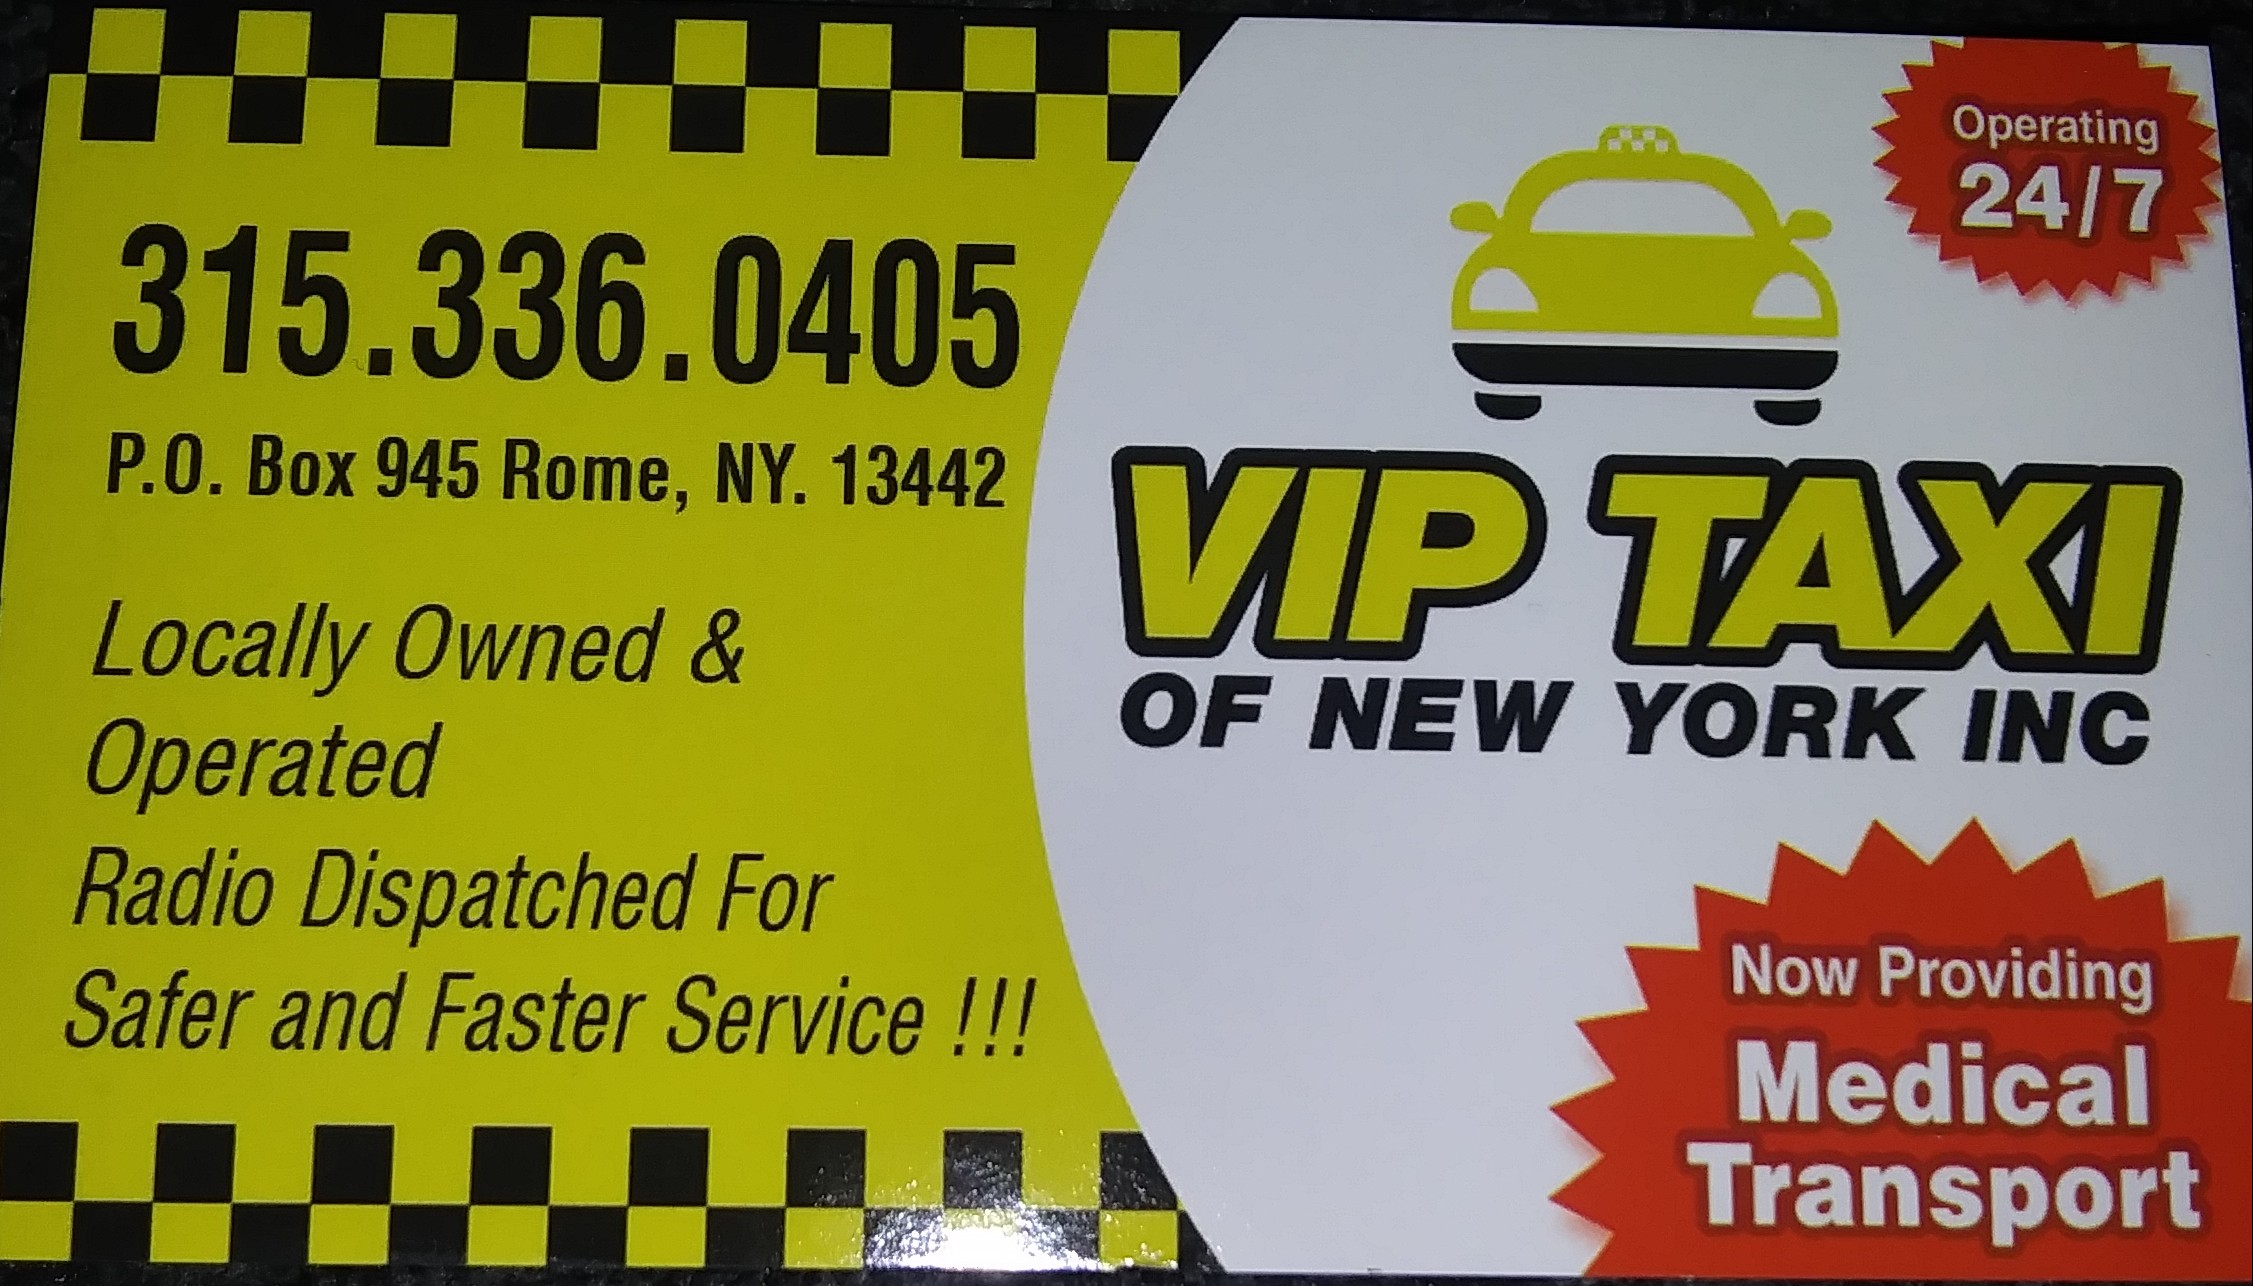 VIP Taxi of New York Inc - Rome, NY 13440